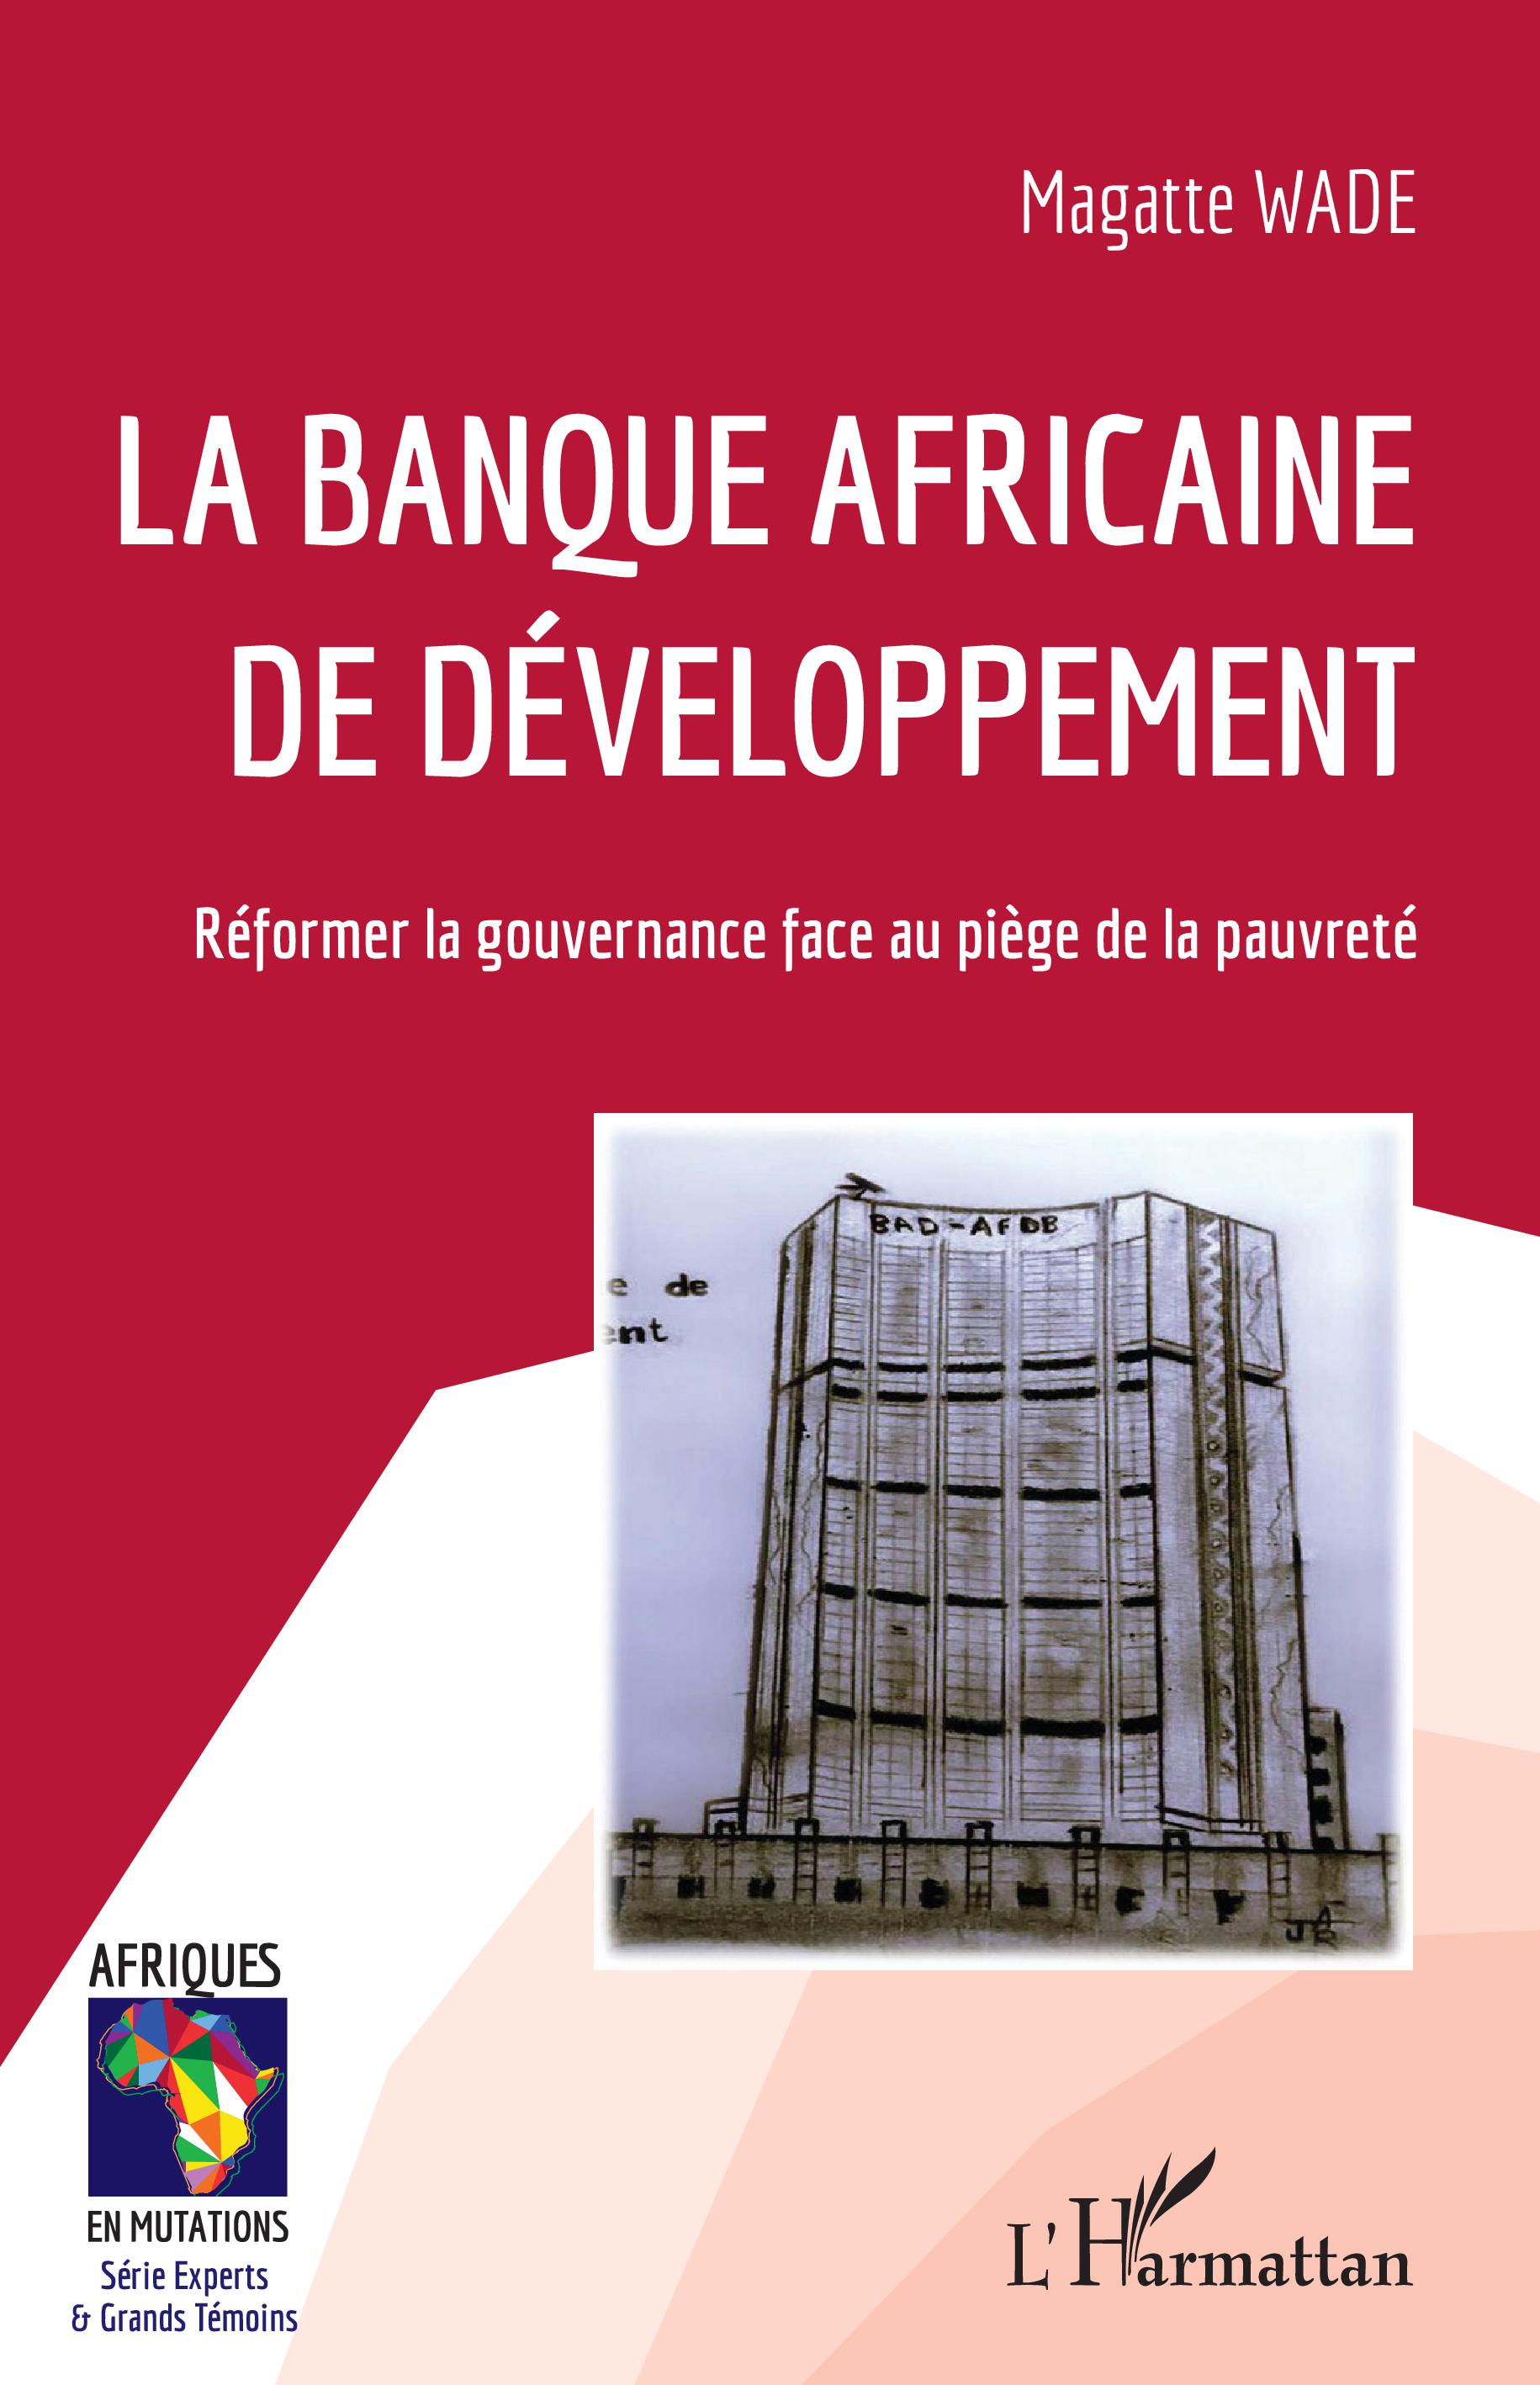 Banque africaine de développement, la BAD